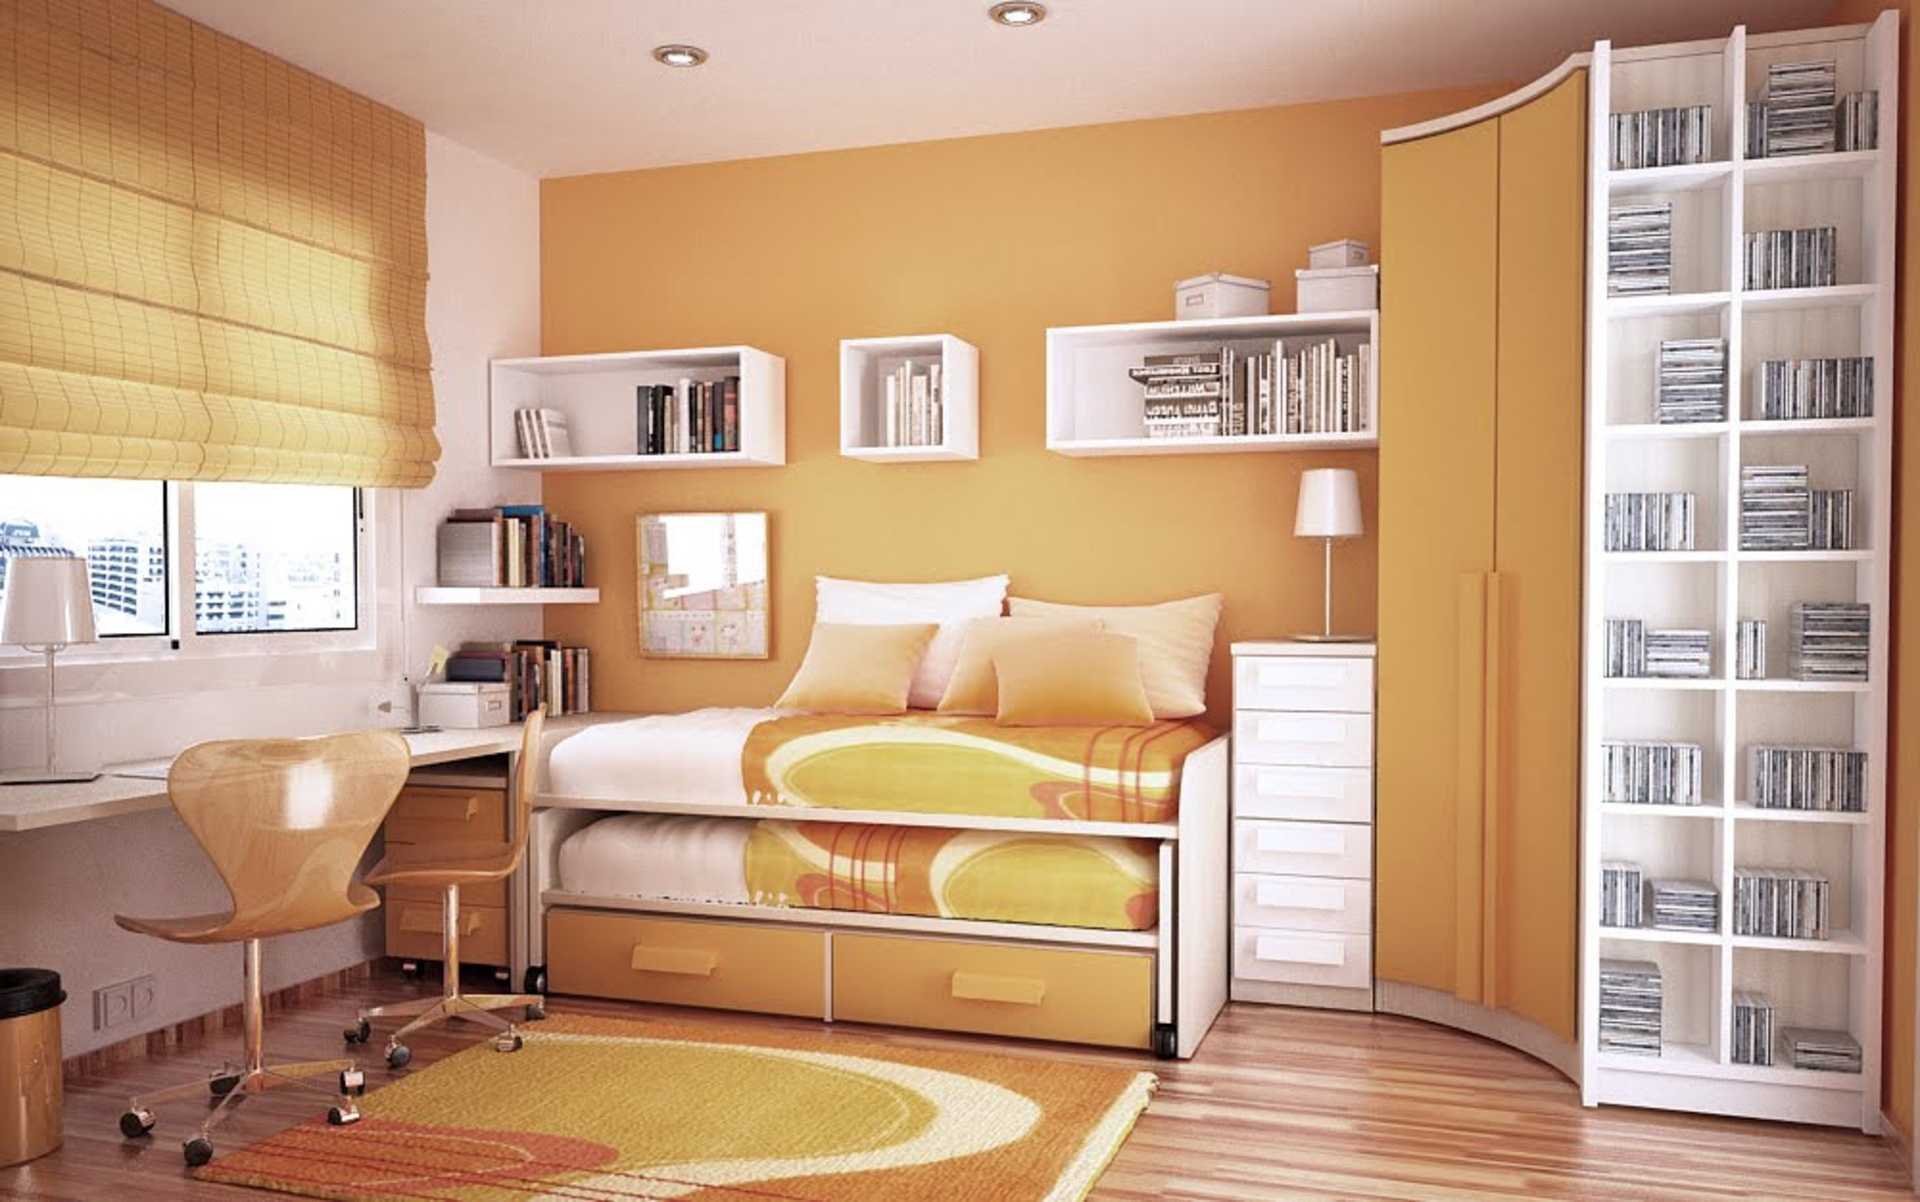 Перестановка мебели в маленькой комнате: основные принципы и полезные советы